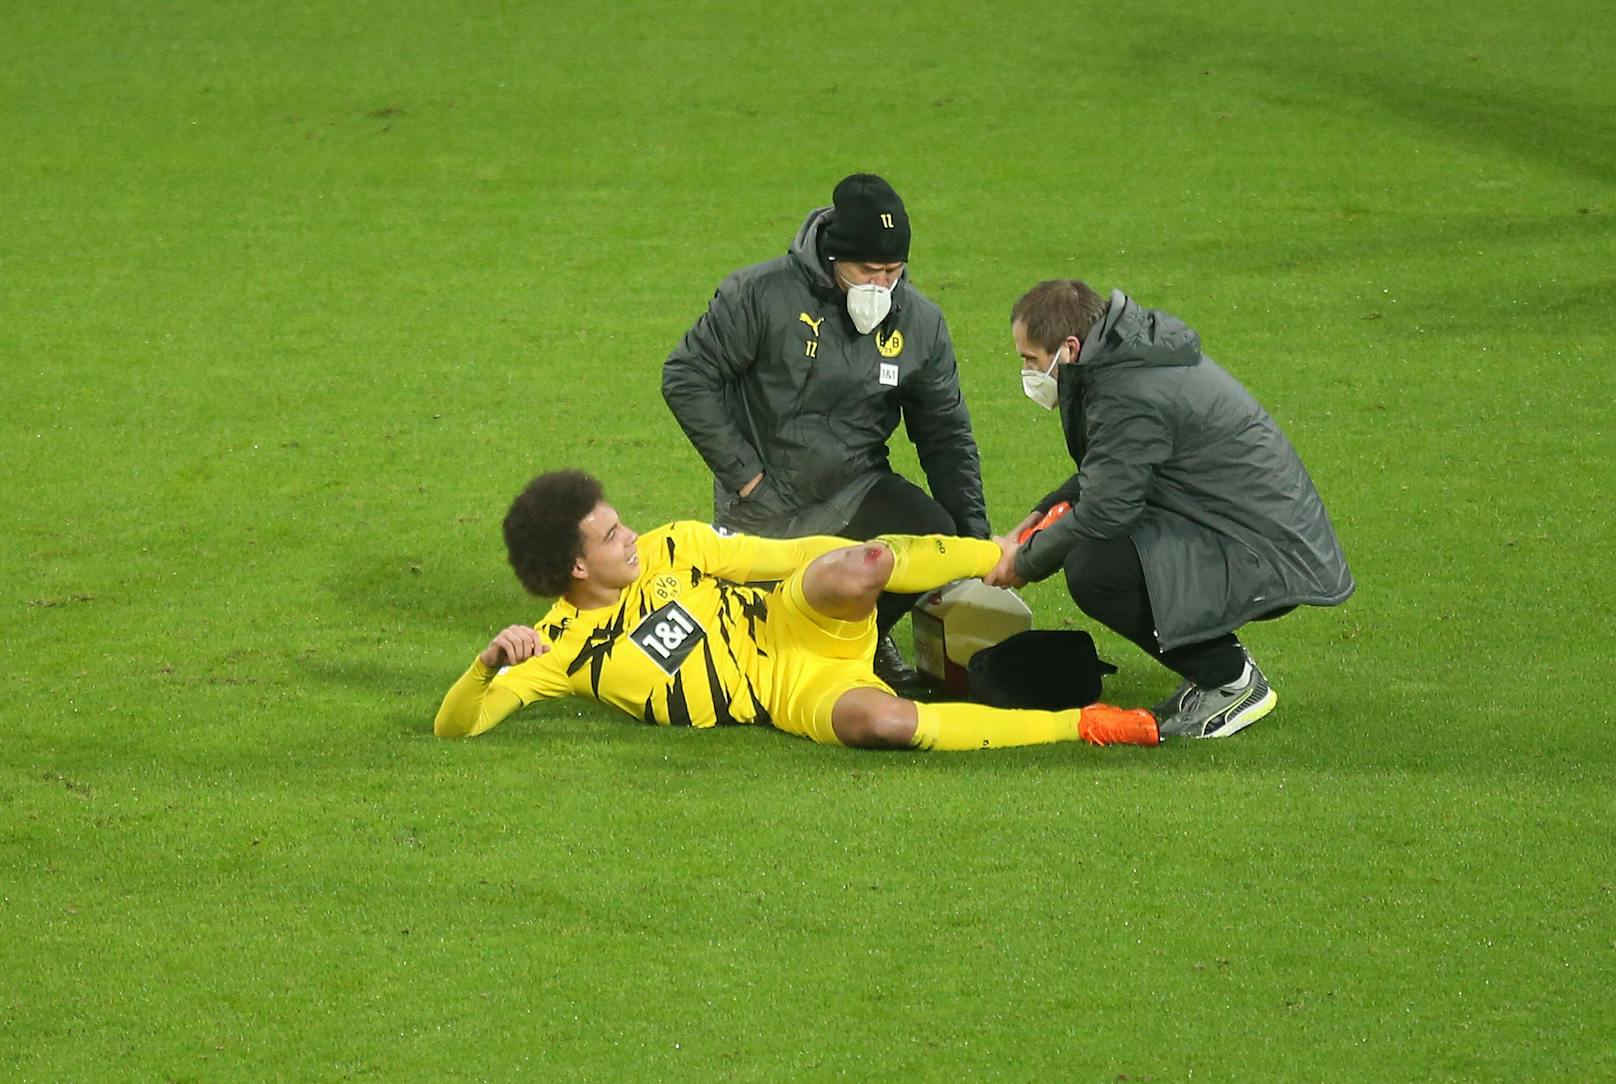 Axel Witsel ahnte schon auf dem Feld, dass er sich schwer verletzt hatte.